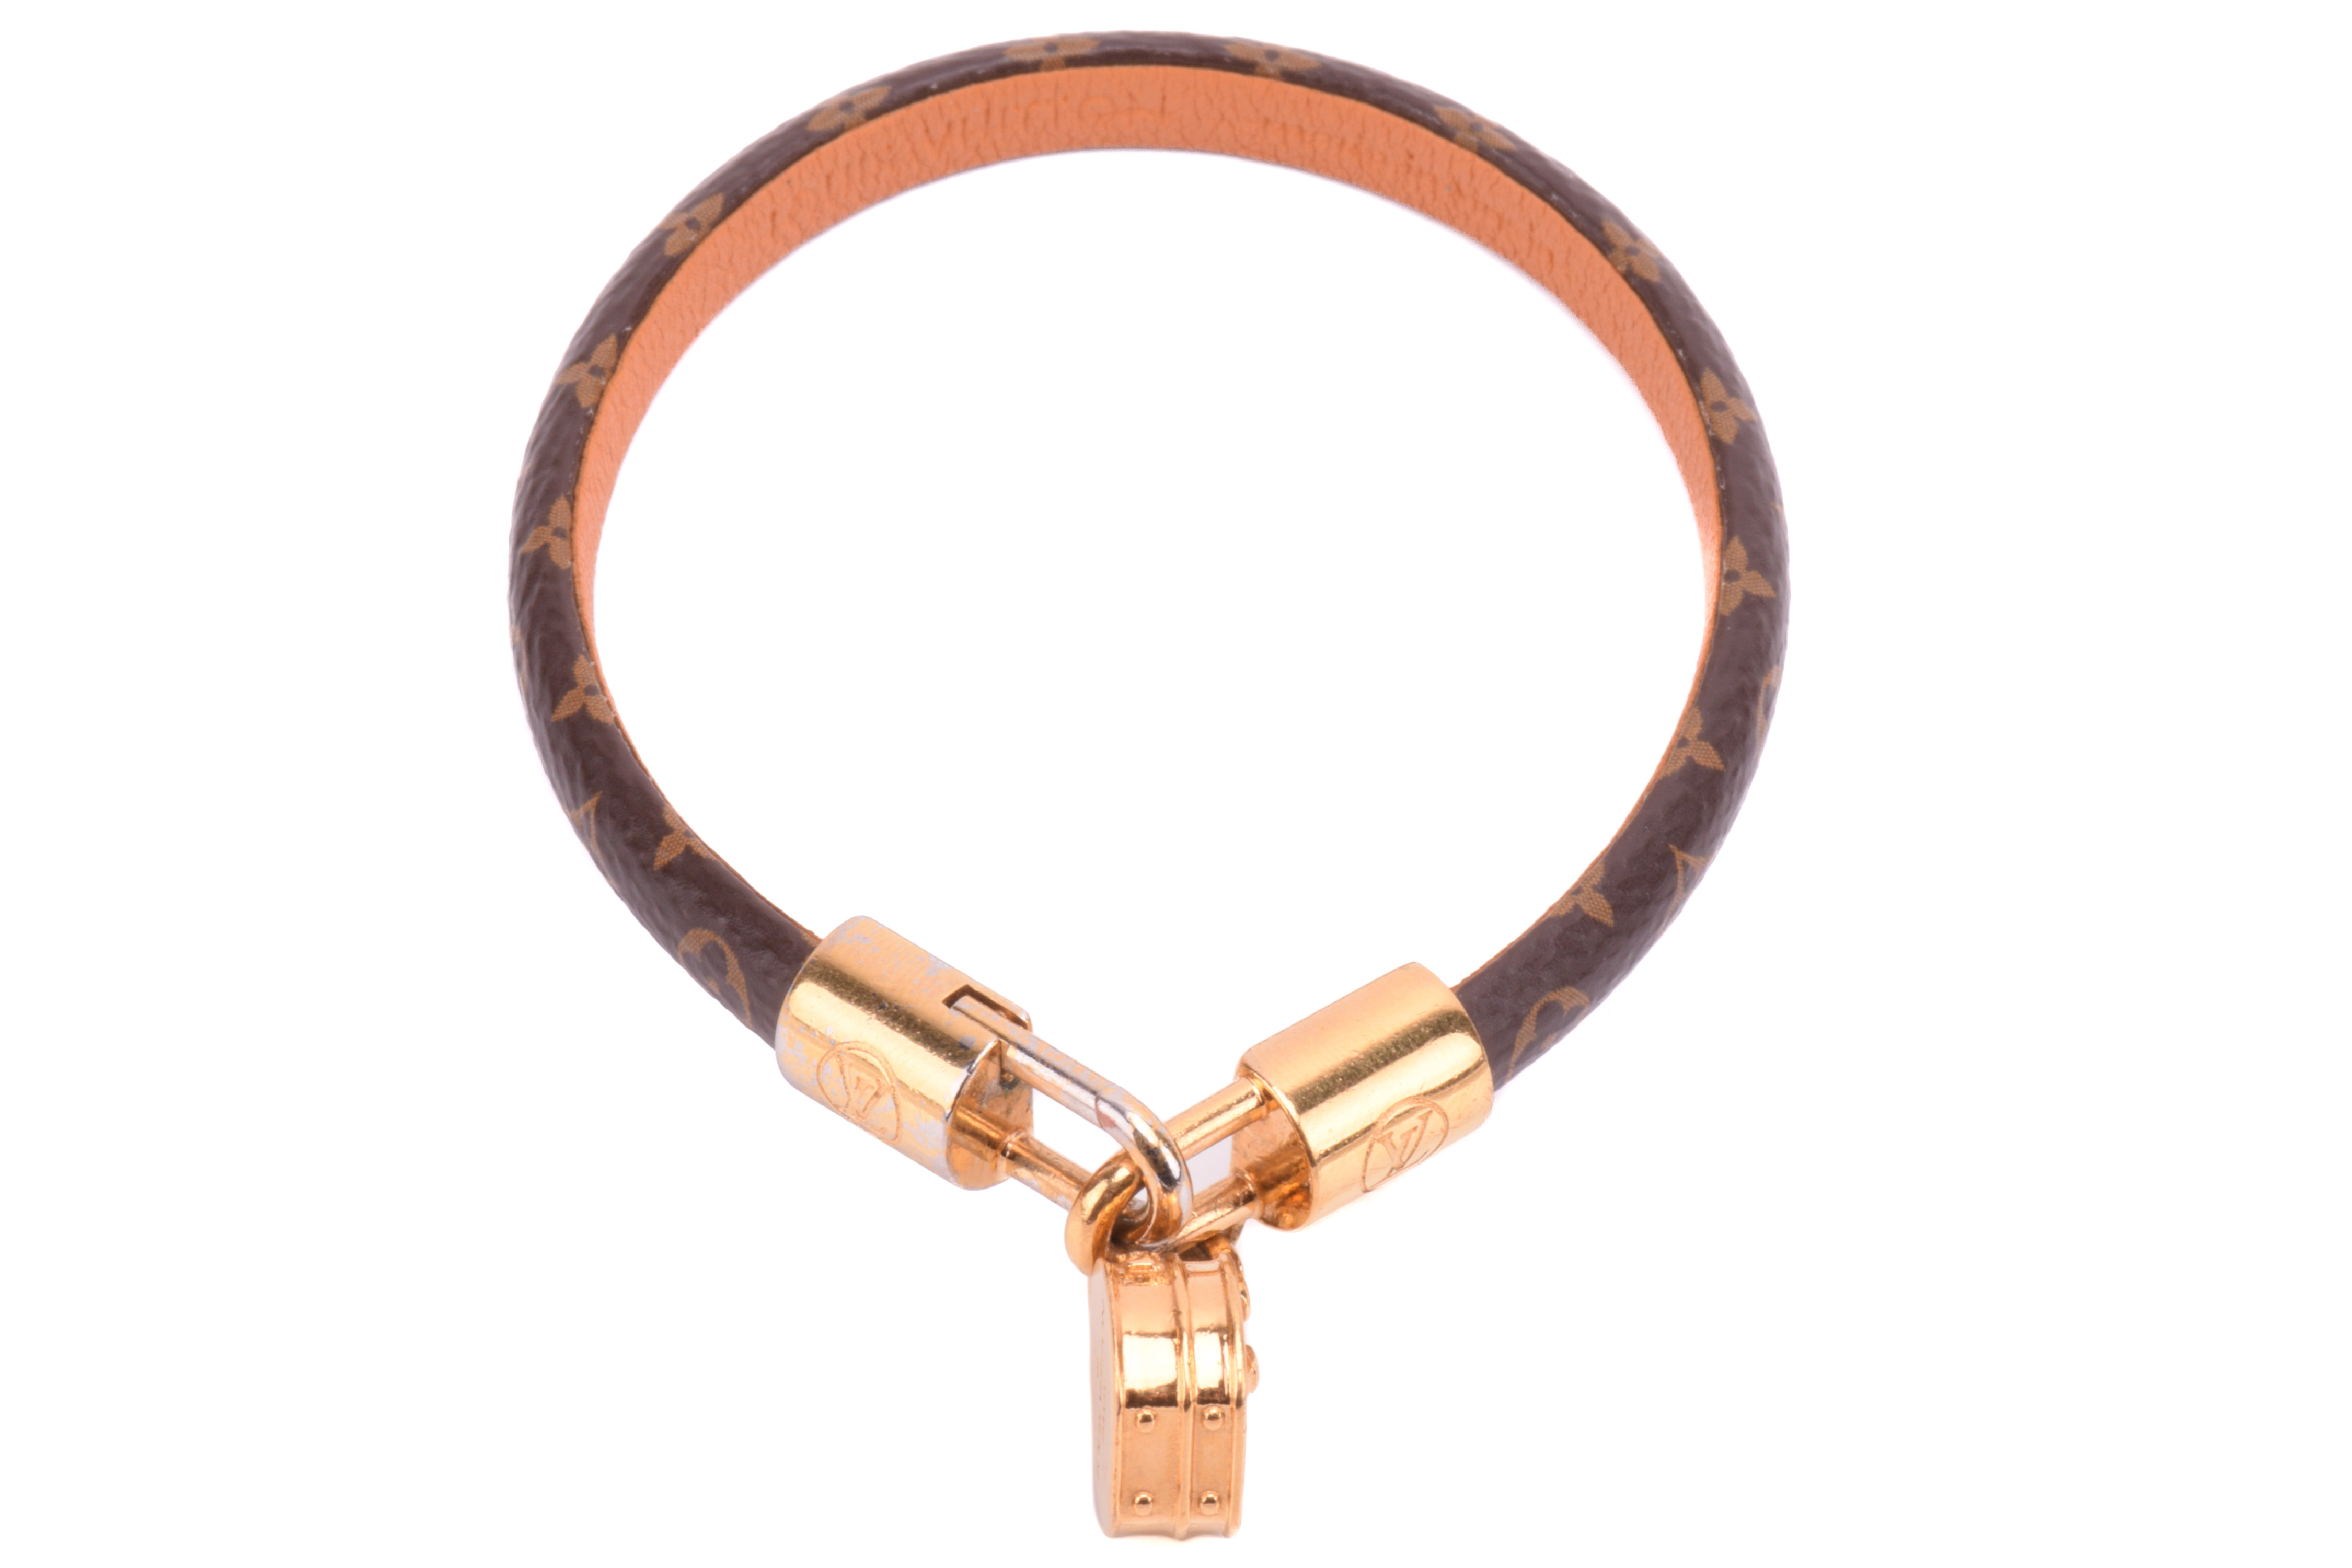 Louis Vuitton Canvas LV Tribute Charm Bracelet - Brown, Brass